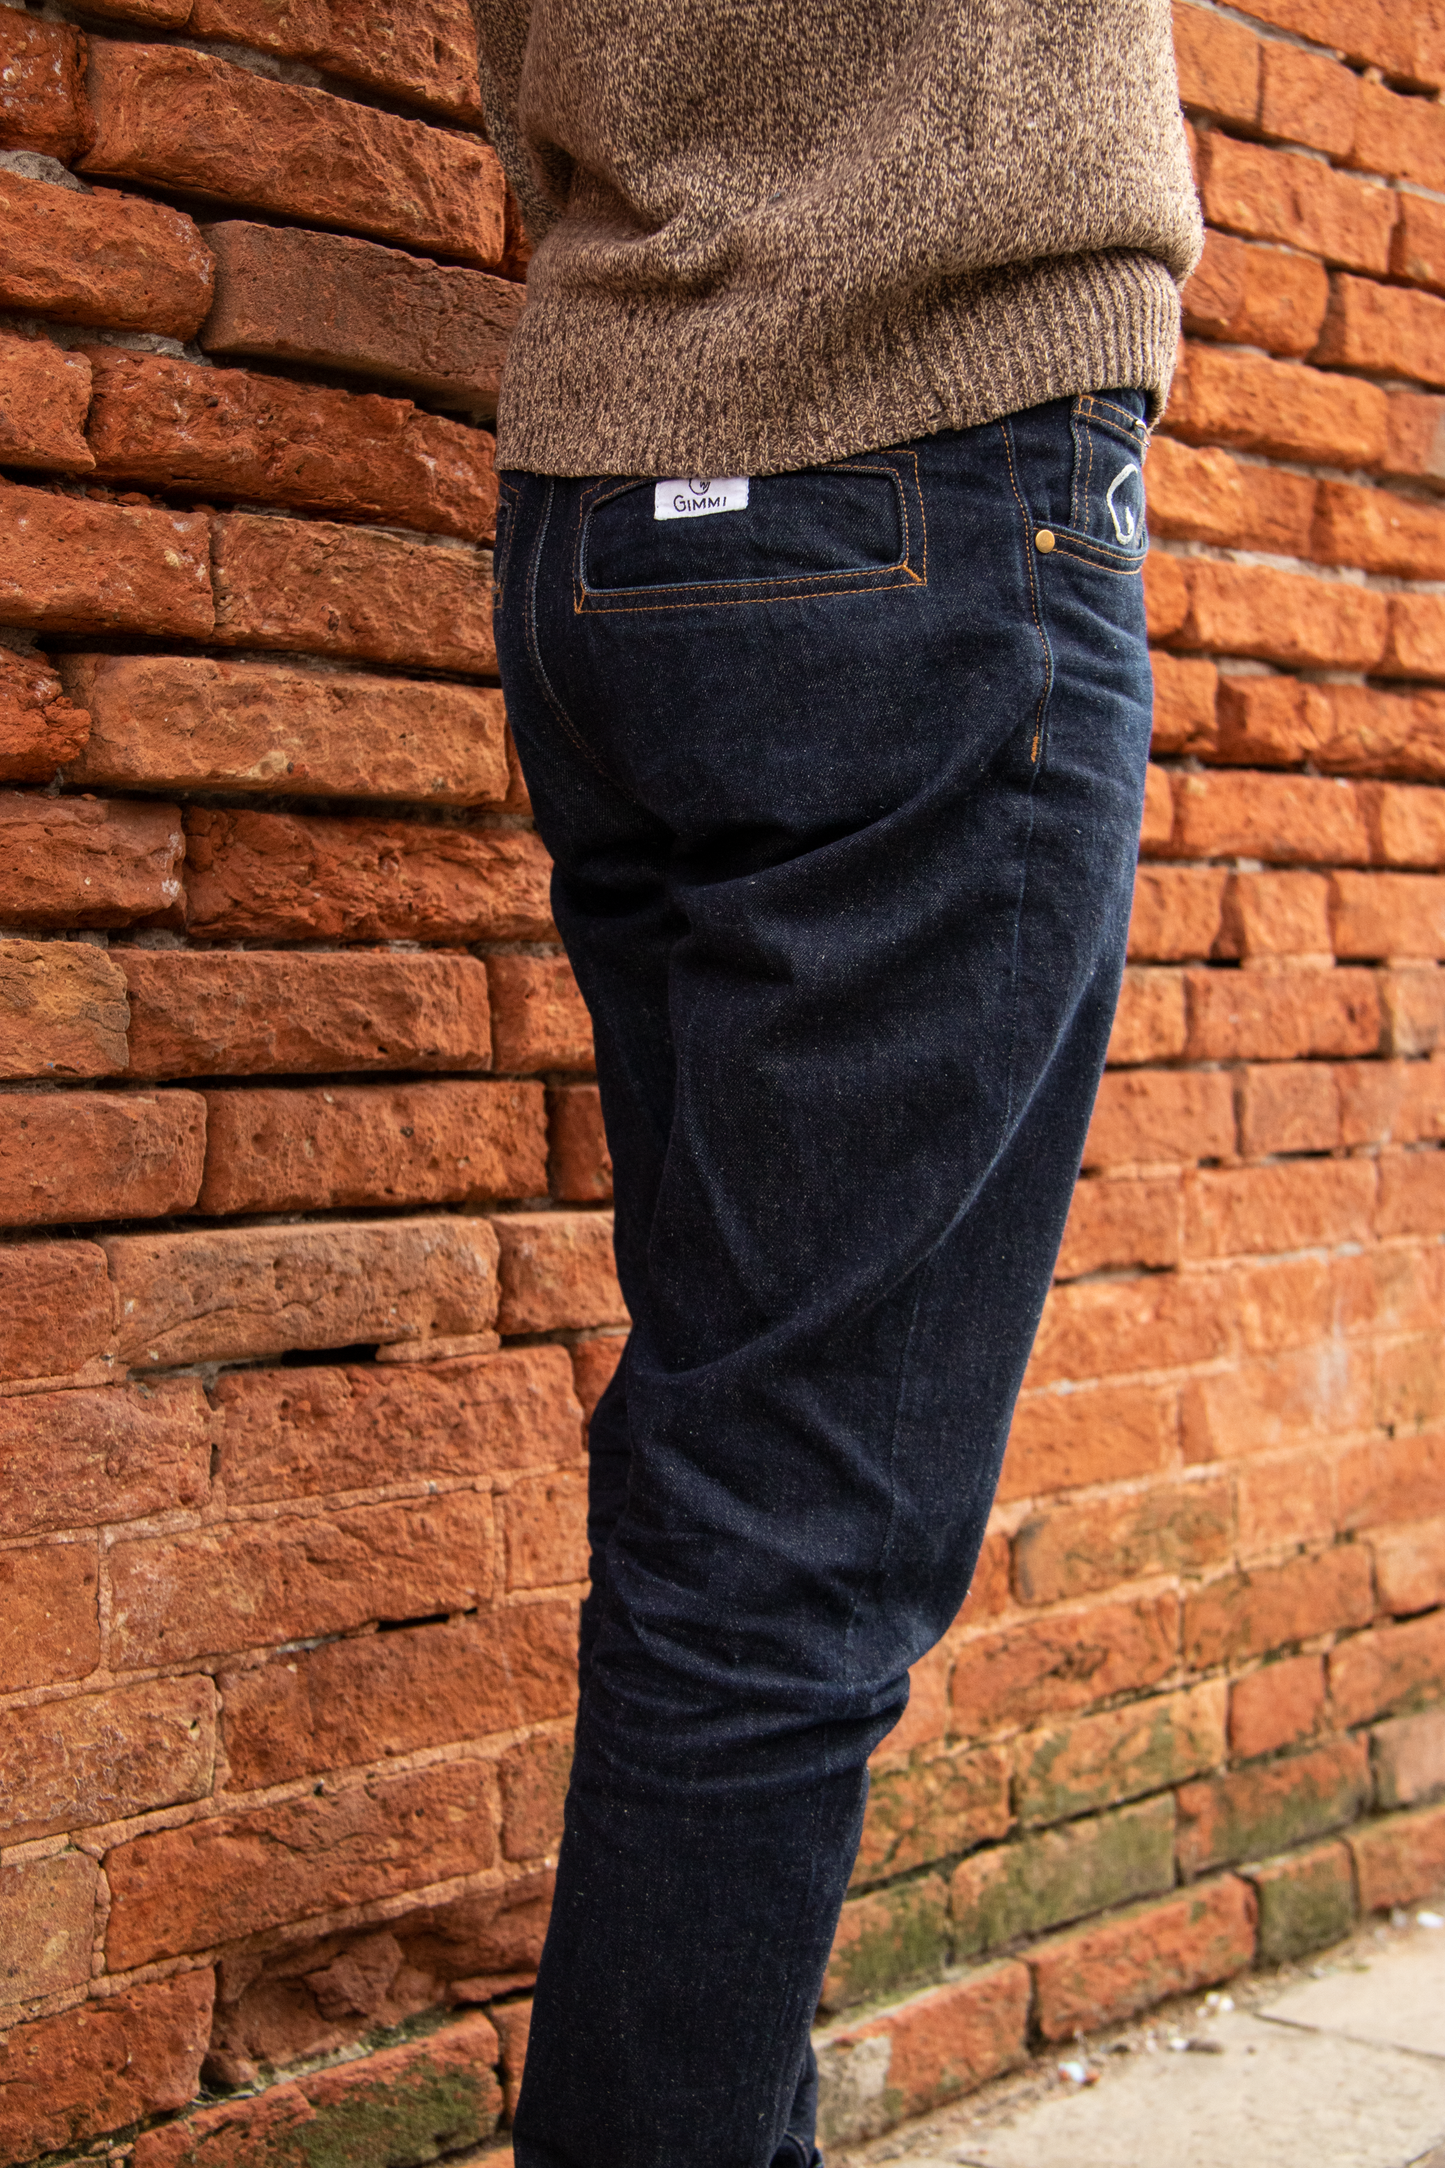 jeans-venezia-denim-canapa-dettagli